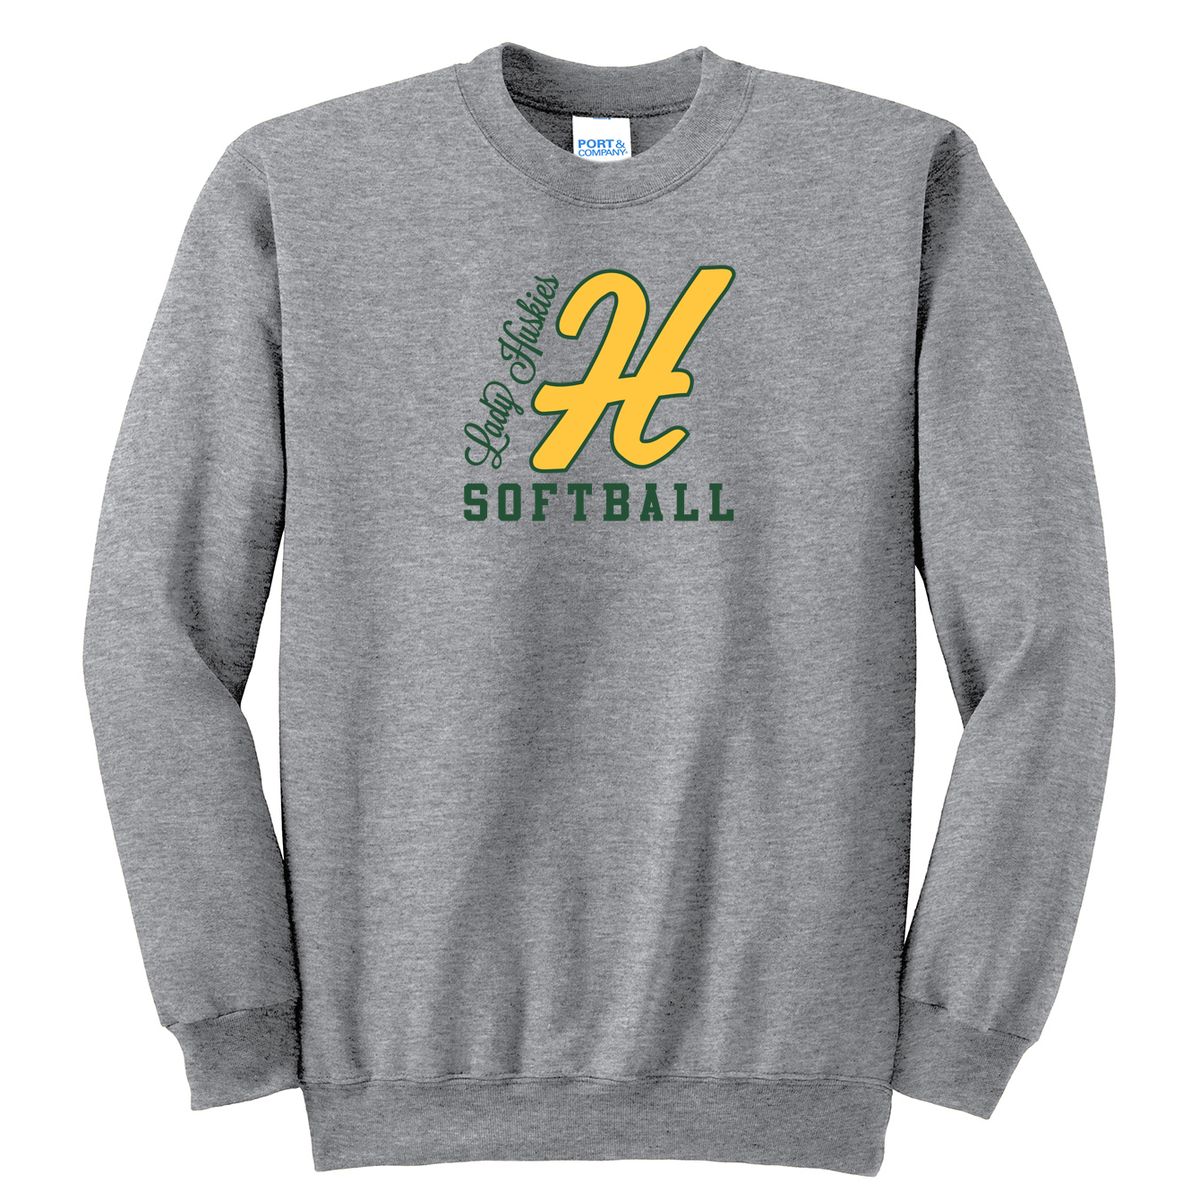 Horizon Softball Crew Neck Sweater